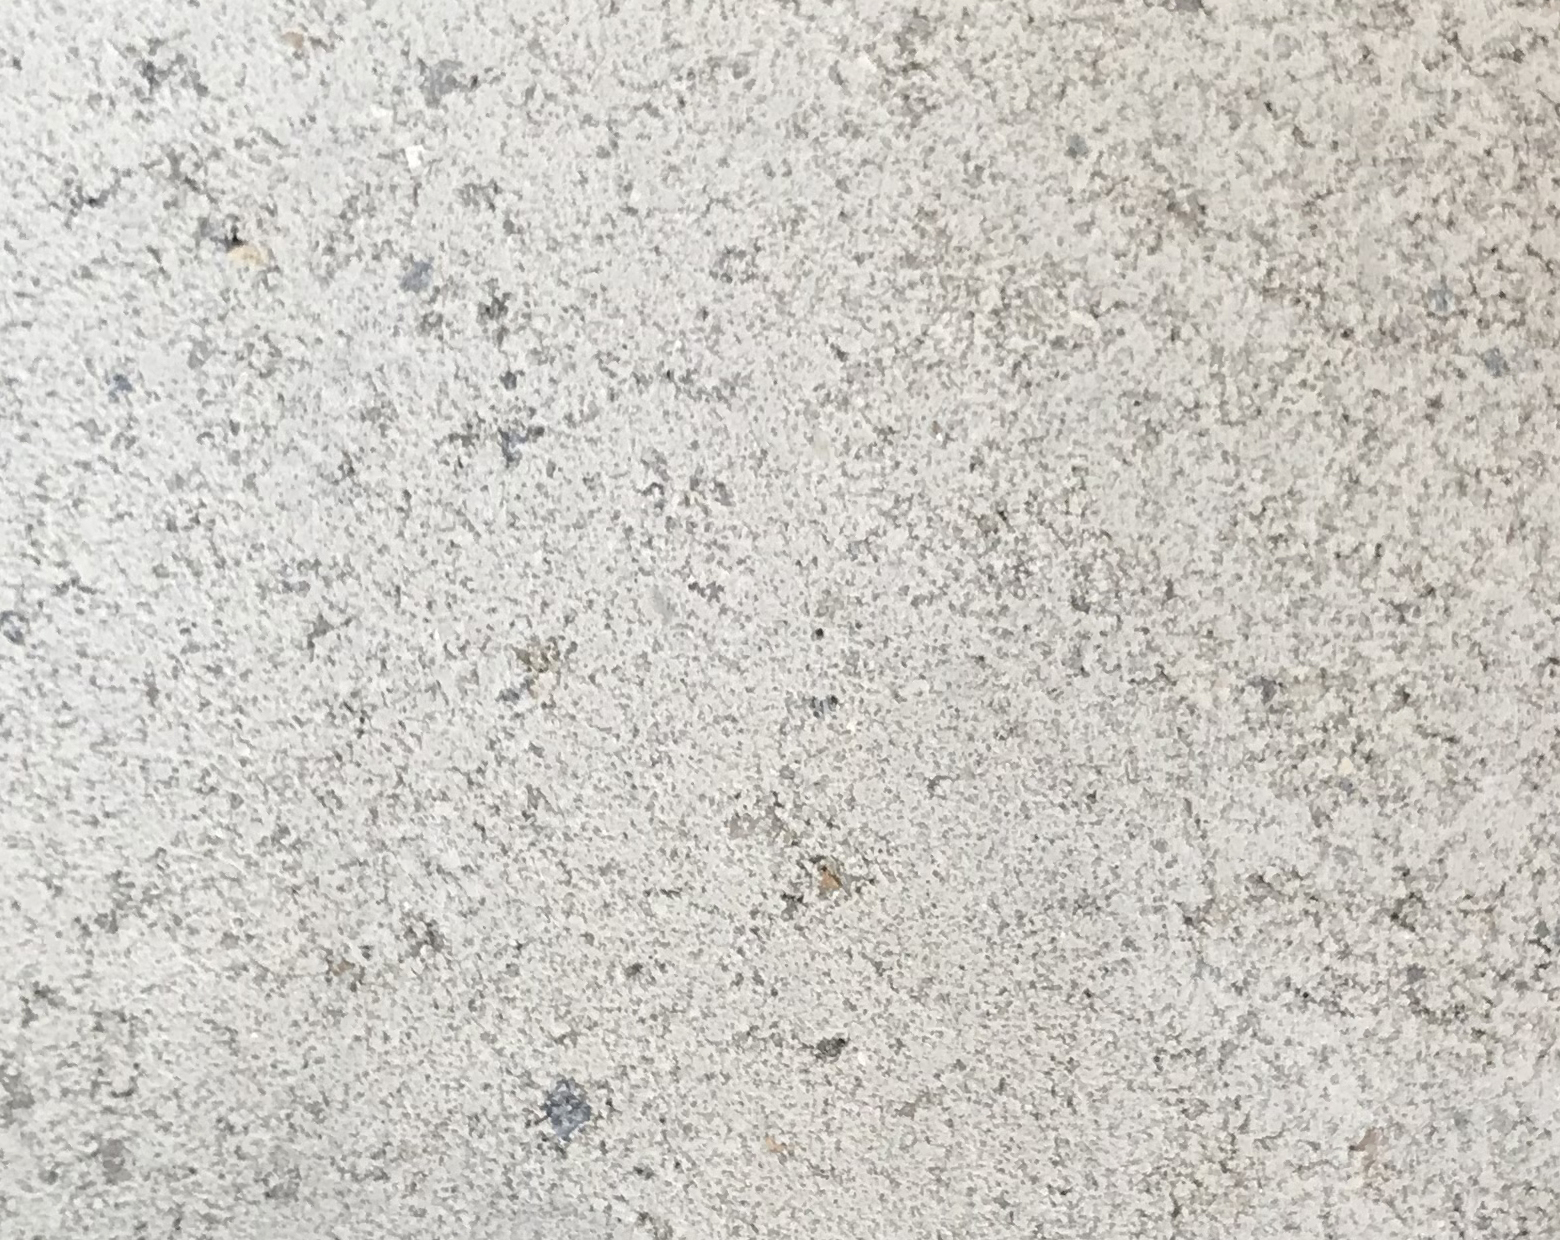 Harmo roc nevadaset, rustica-serie, 8-vormig d=5,00mx7,70m, gebroken wit, beton